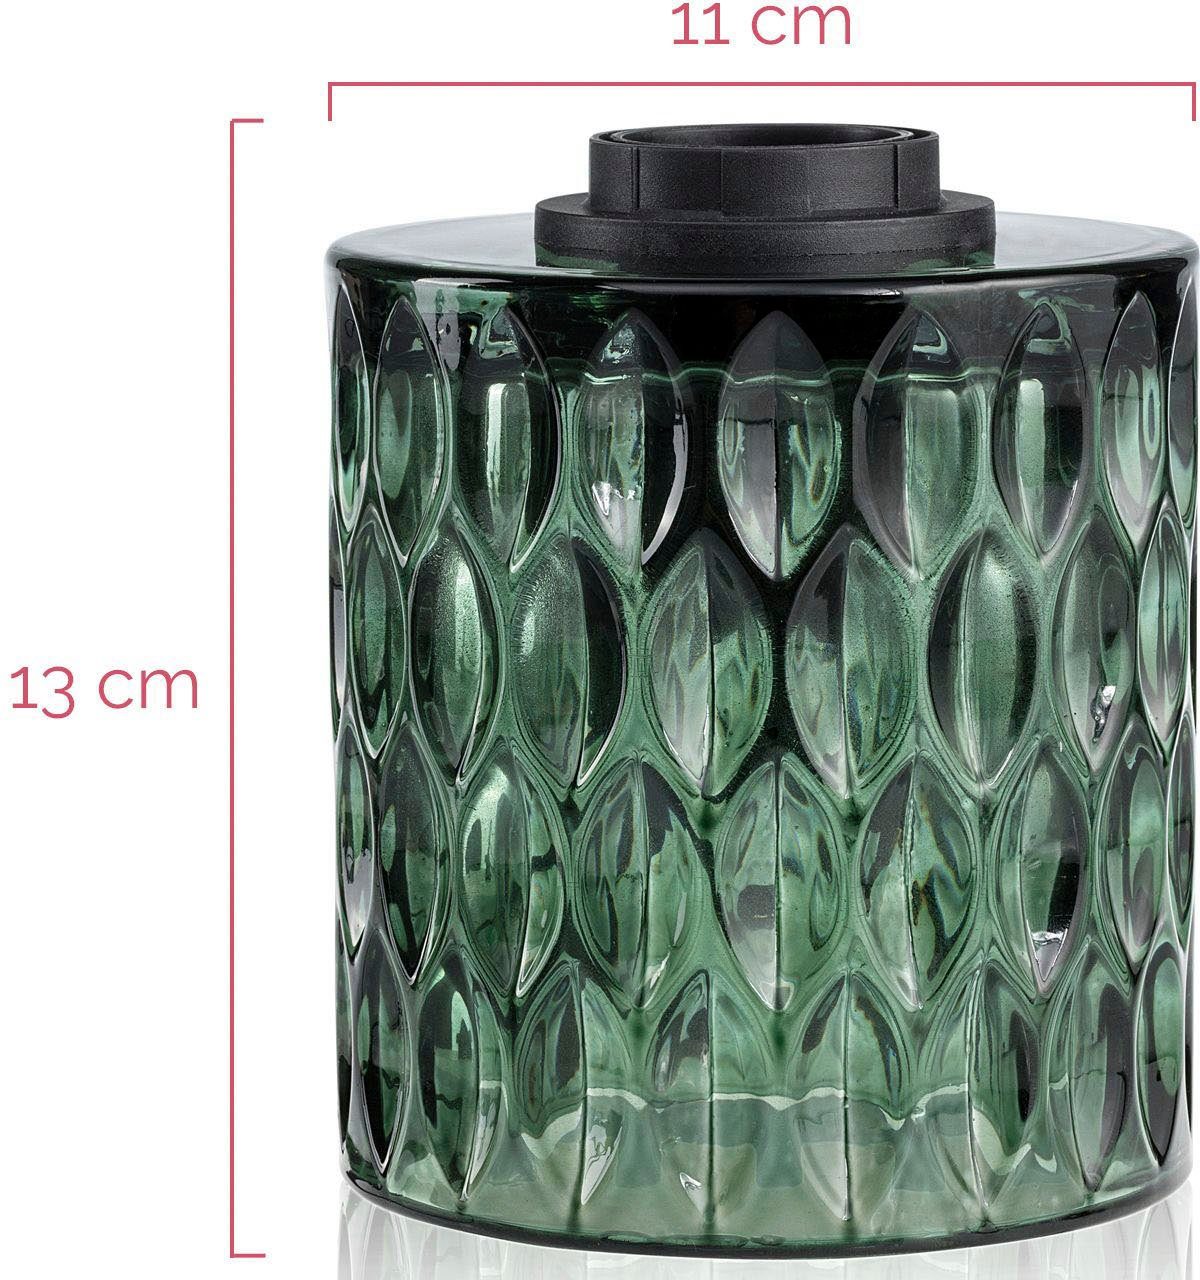 Pauleen Tischleuchte Crystal Magic, Glas Leuchtmittel, E27, Grün, ohne